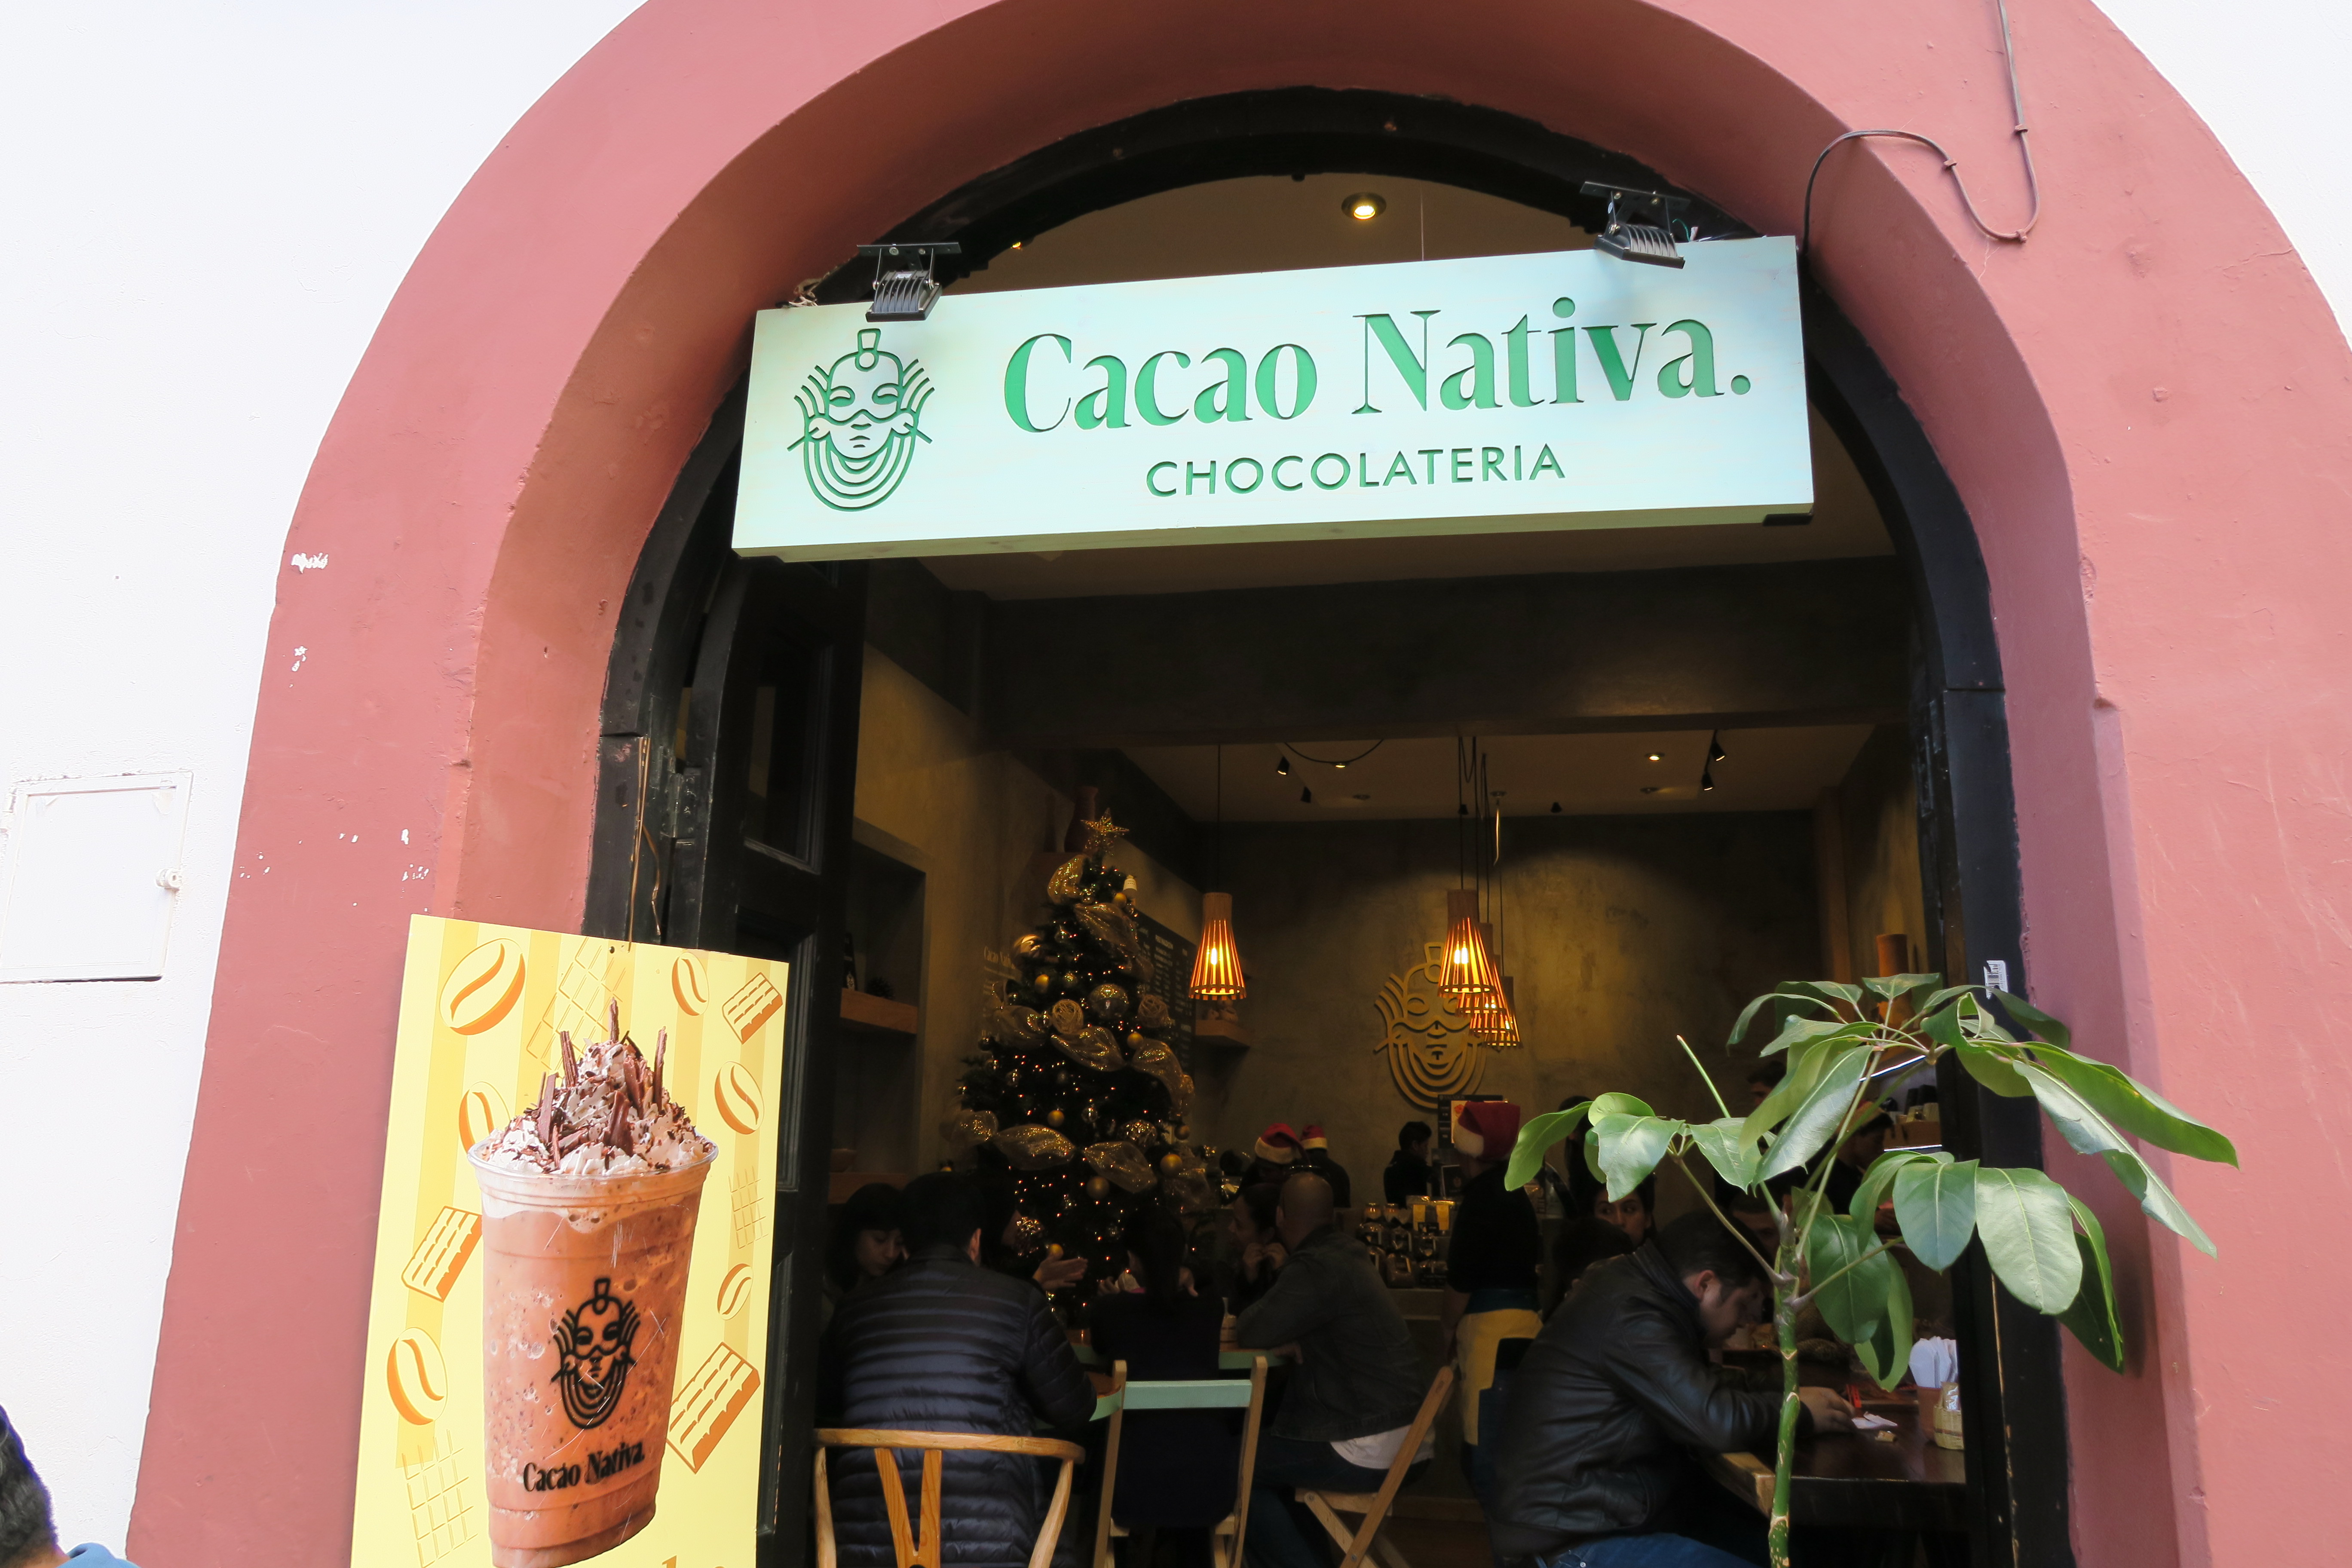 Cacao Nativa et une chocolaterie mexicaine, chocolateria, qui s'inspire du logo de Starbuck pour promouvoir les produits locaux.